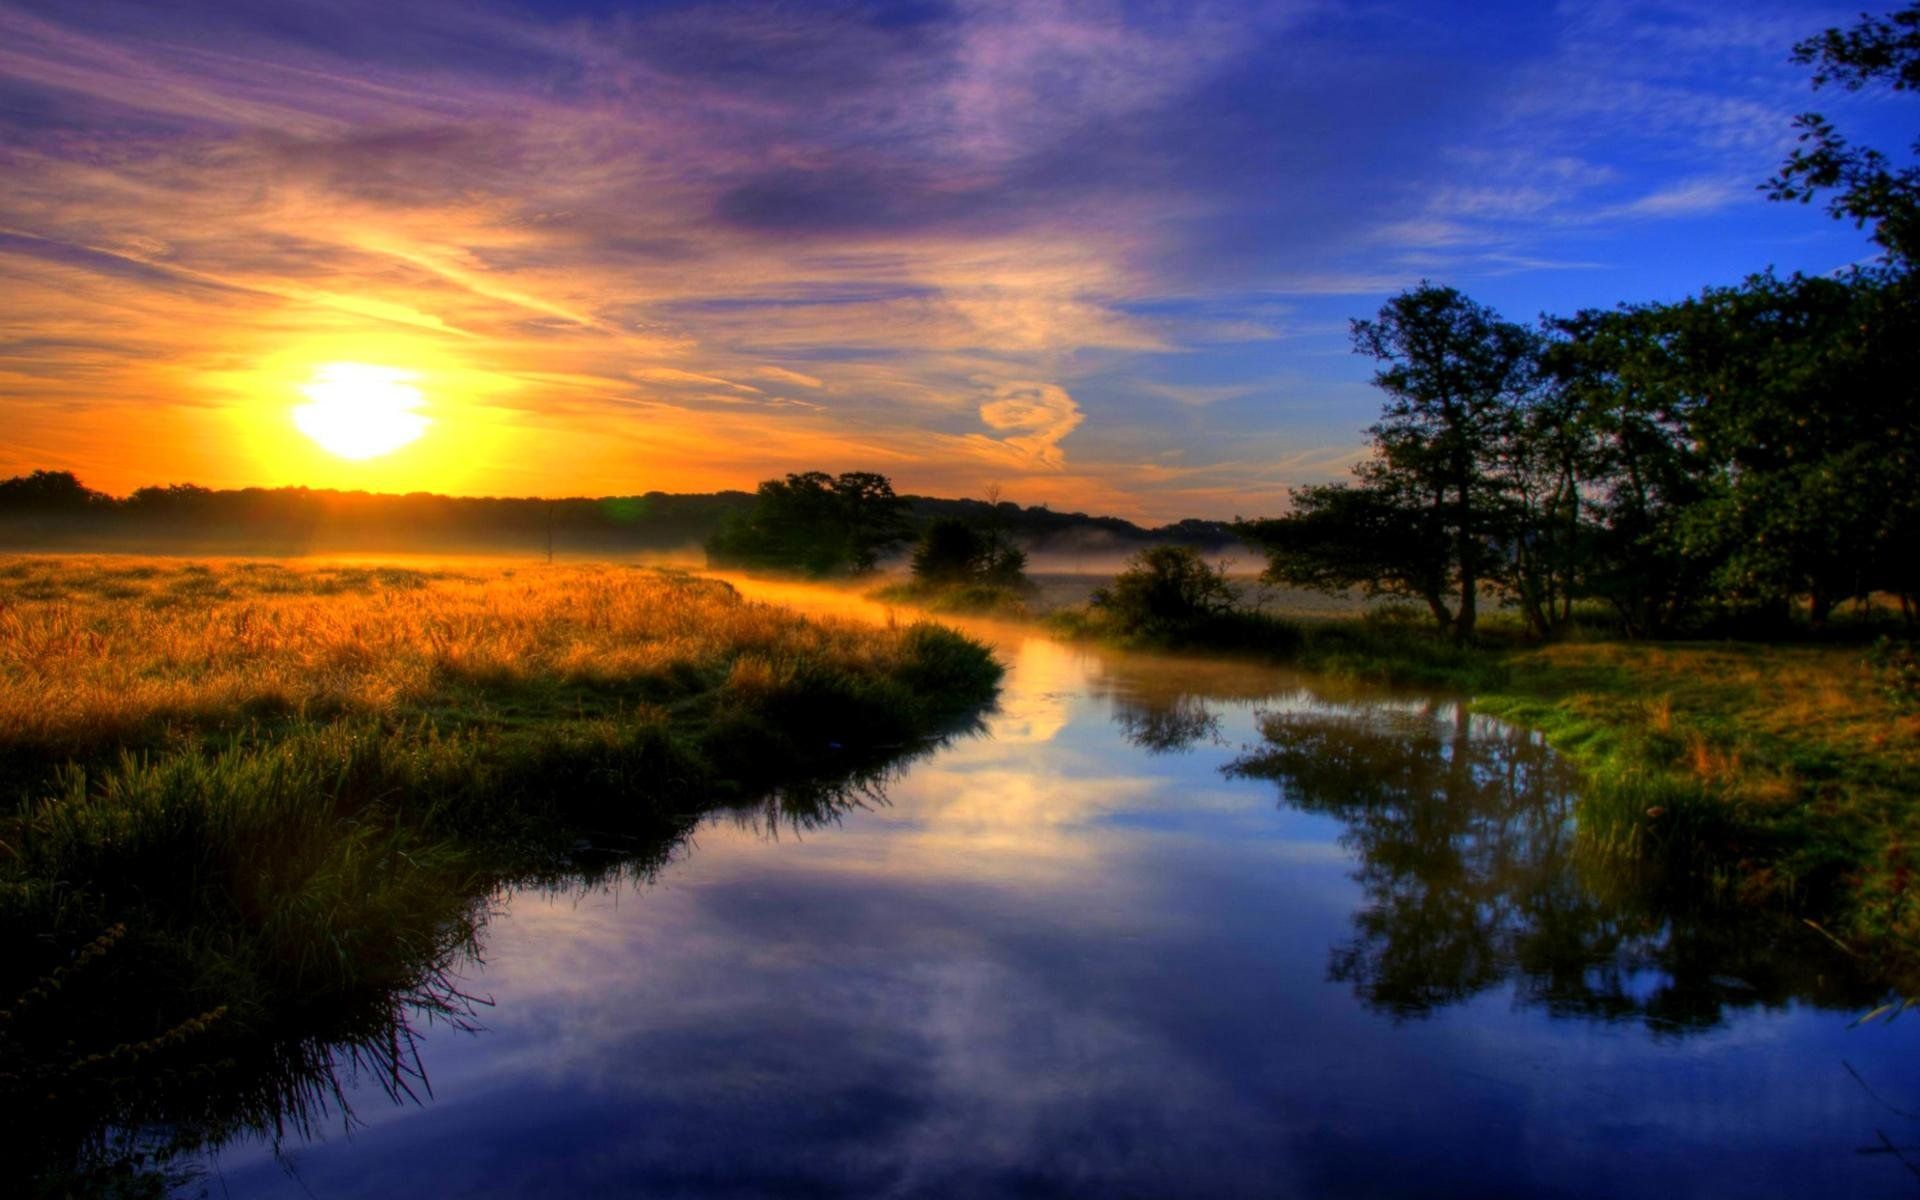 nature wallpaper full HD 1080p. Beautiful morning image, Best nature wallpaper, Good morning sunrise